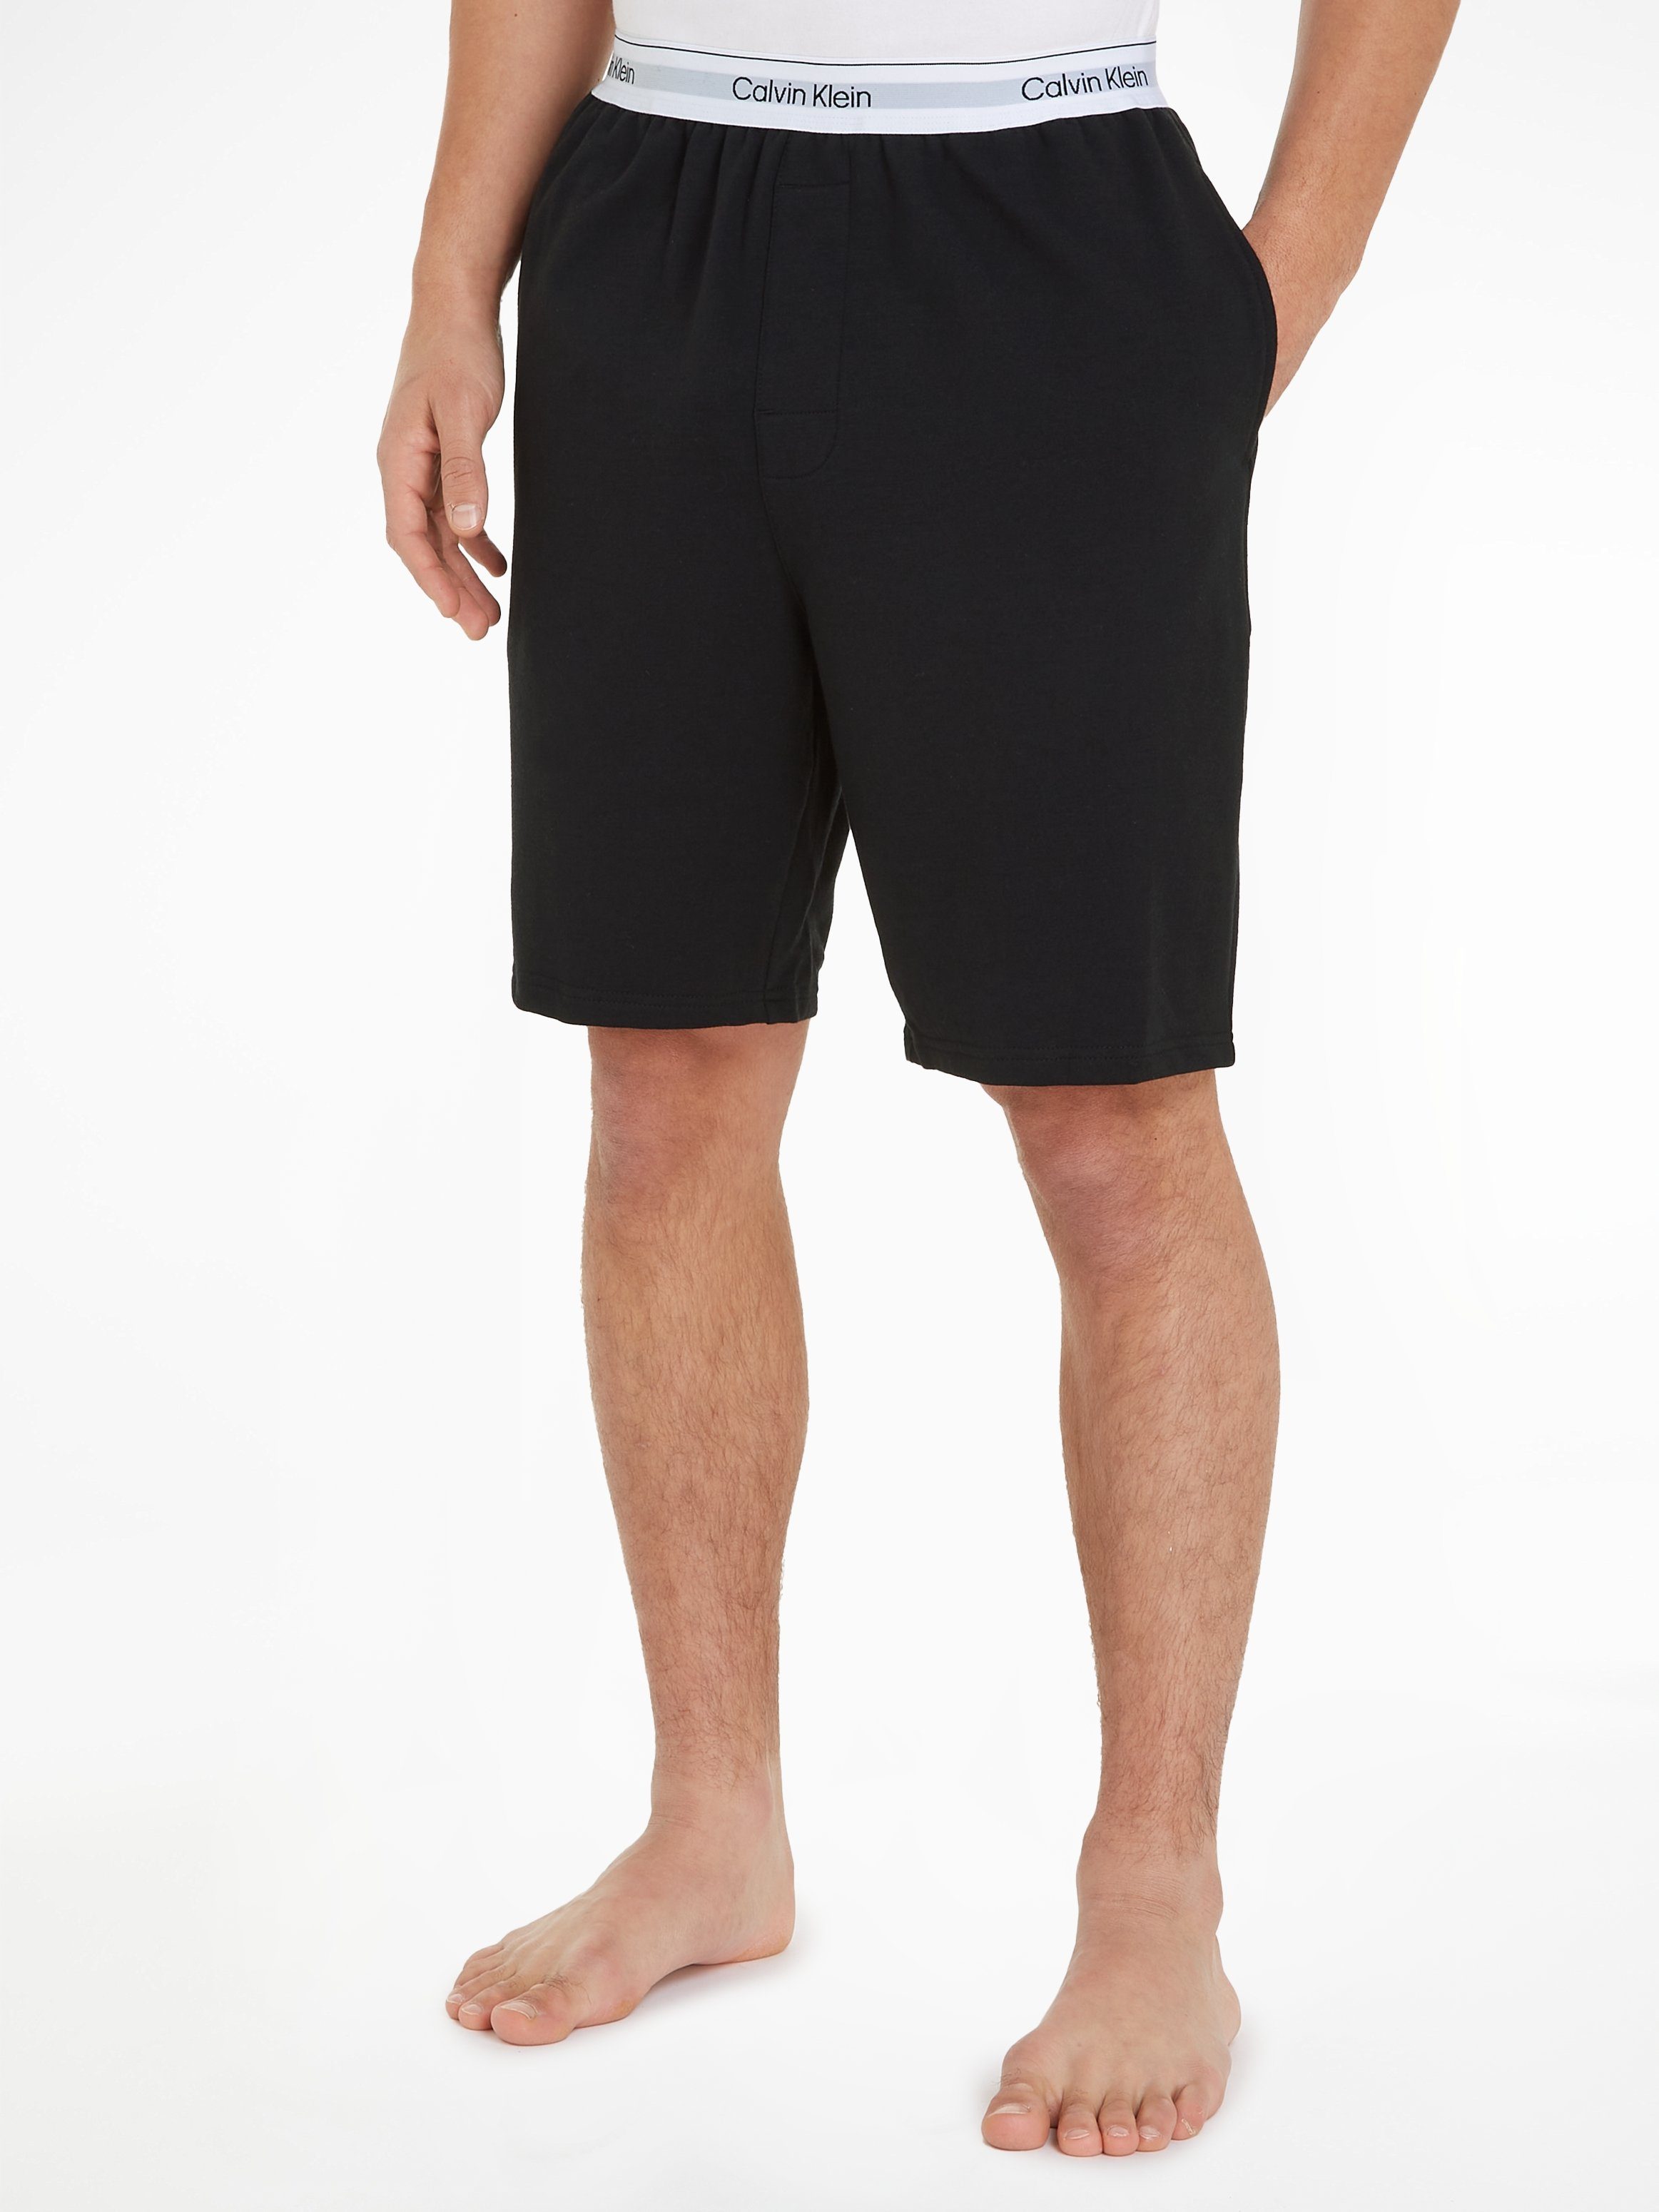 Calvin Klein Underwear Schlafshorts mit Calvin Klein Logoschriftzug am Wäschebund schwarz